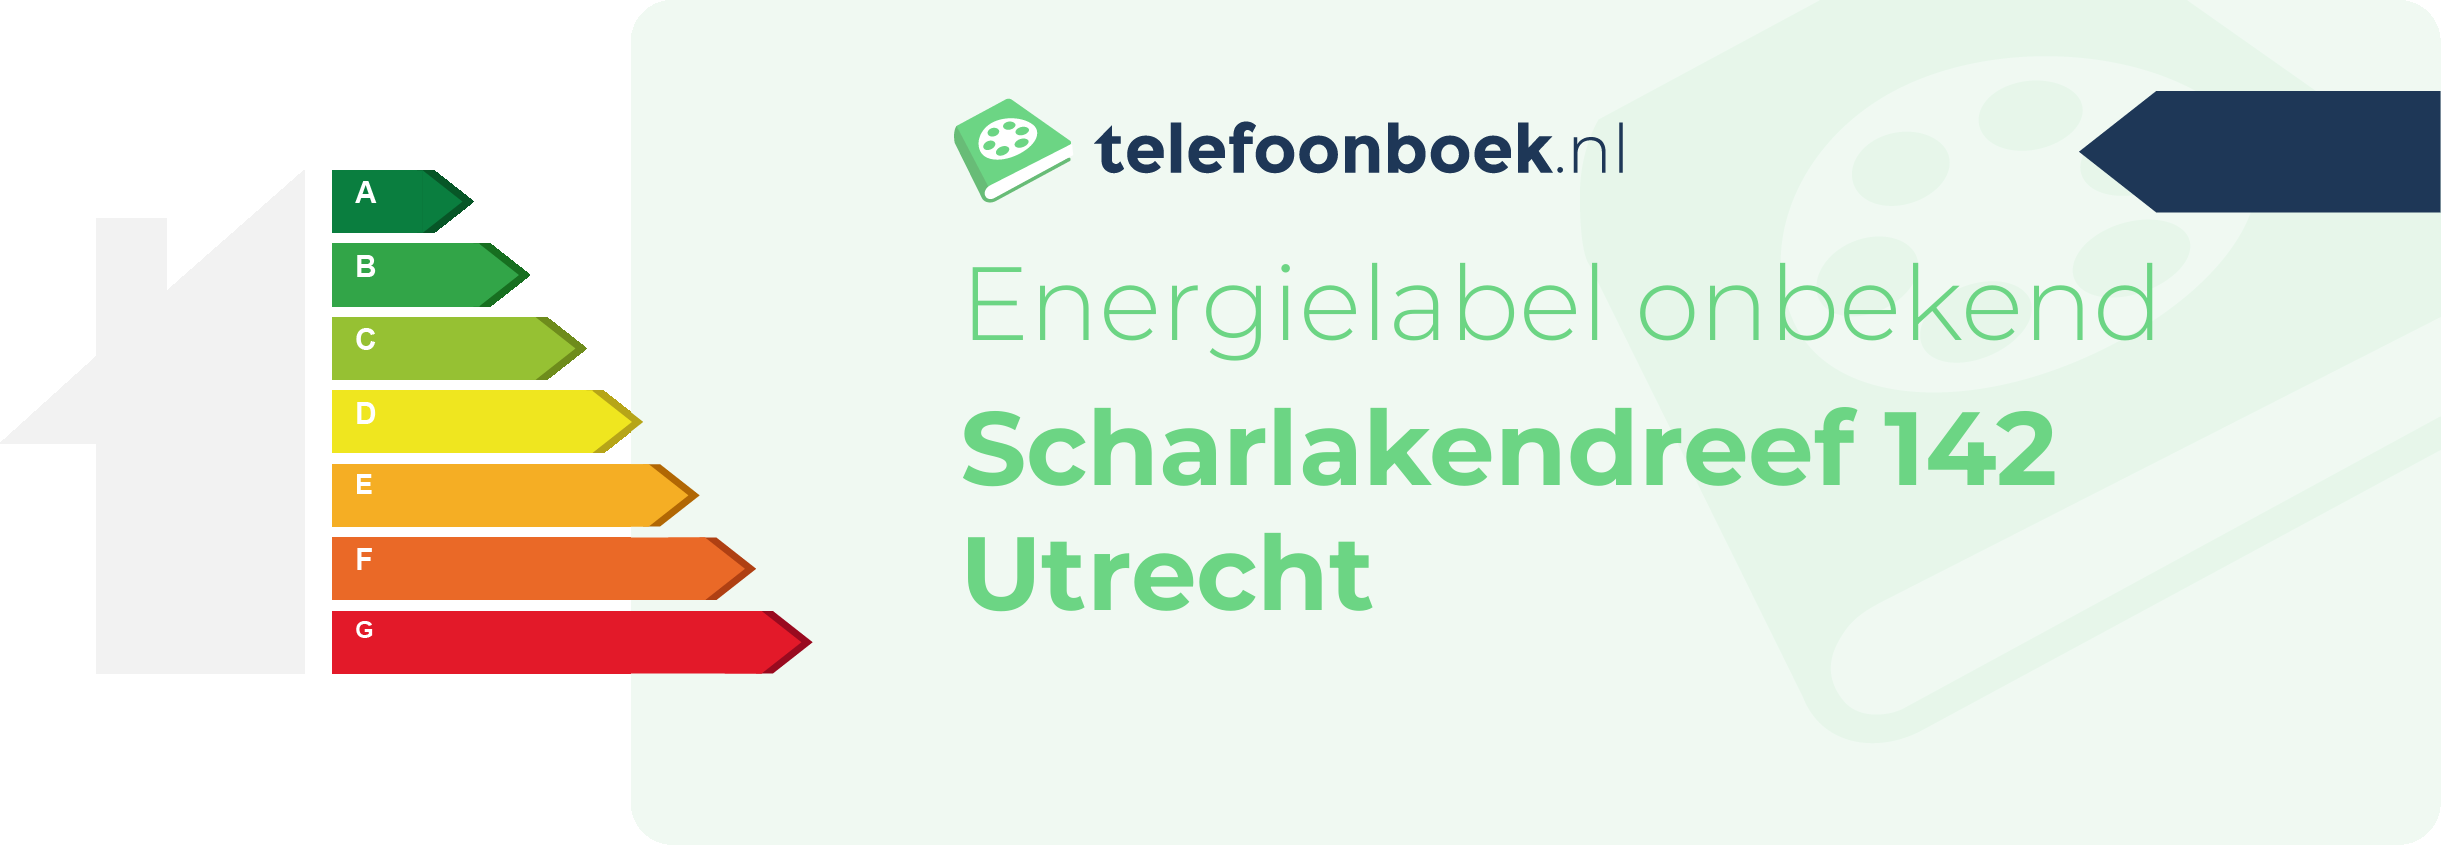 Energielabel Scharlakendreef 142 Utrecht